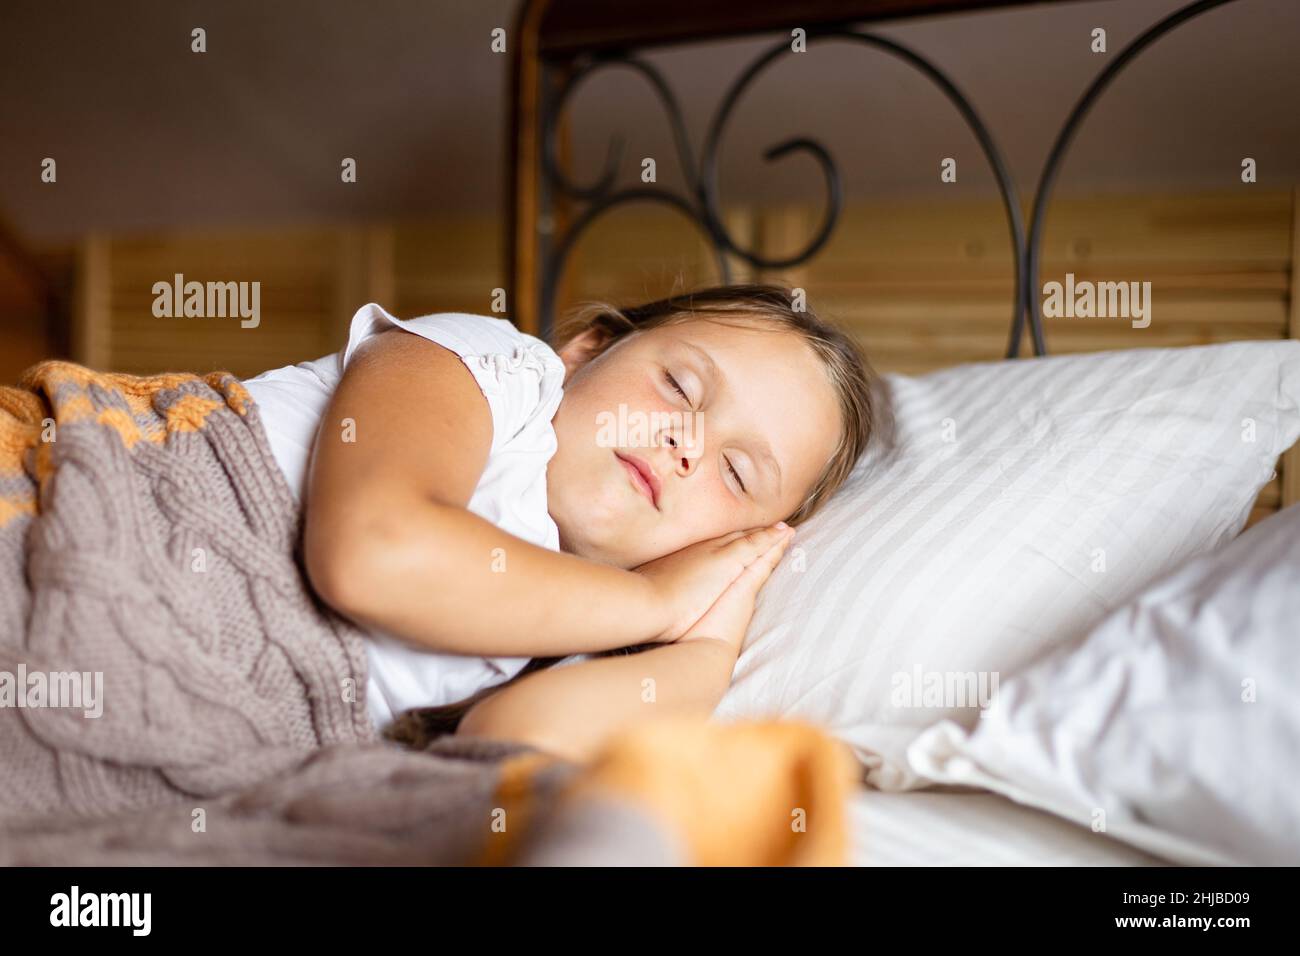 Nahaufnahme eines kleinen Mädchens, das auf einem großen Bett schläft, wobei beide Hände unter dem Kopf mit einer Decke bedeckt sind, die in einem Holzhaus Hauskleidung trägt. Schlafen Sie darin Stockfoto